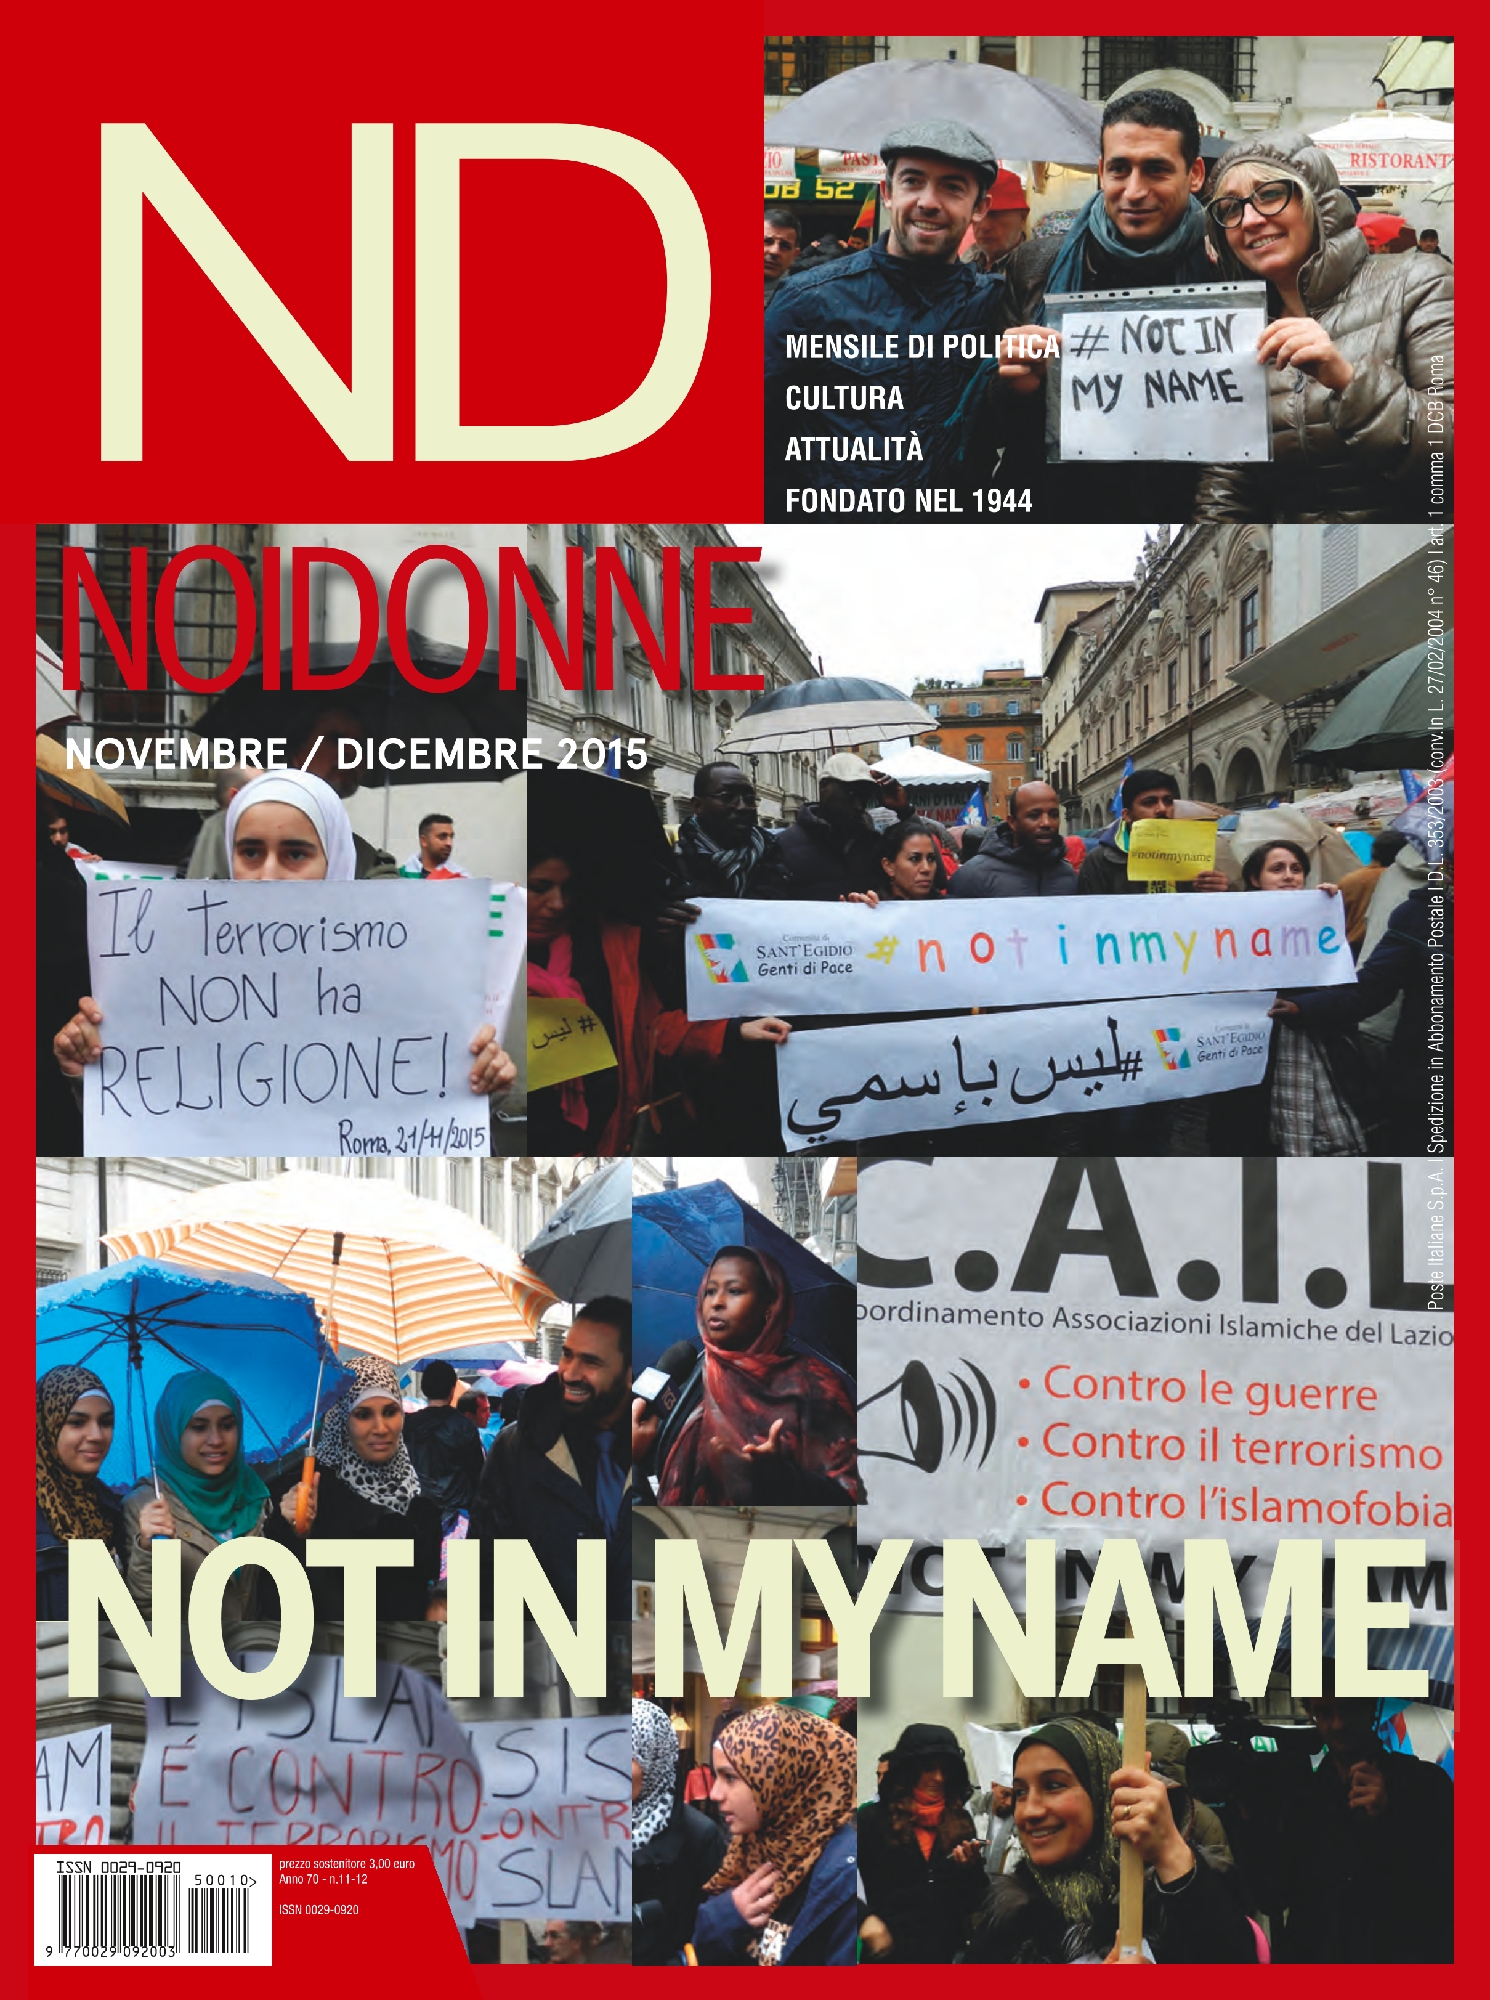 Foto: Not in my name - contro il terrorismo